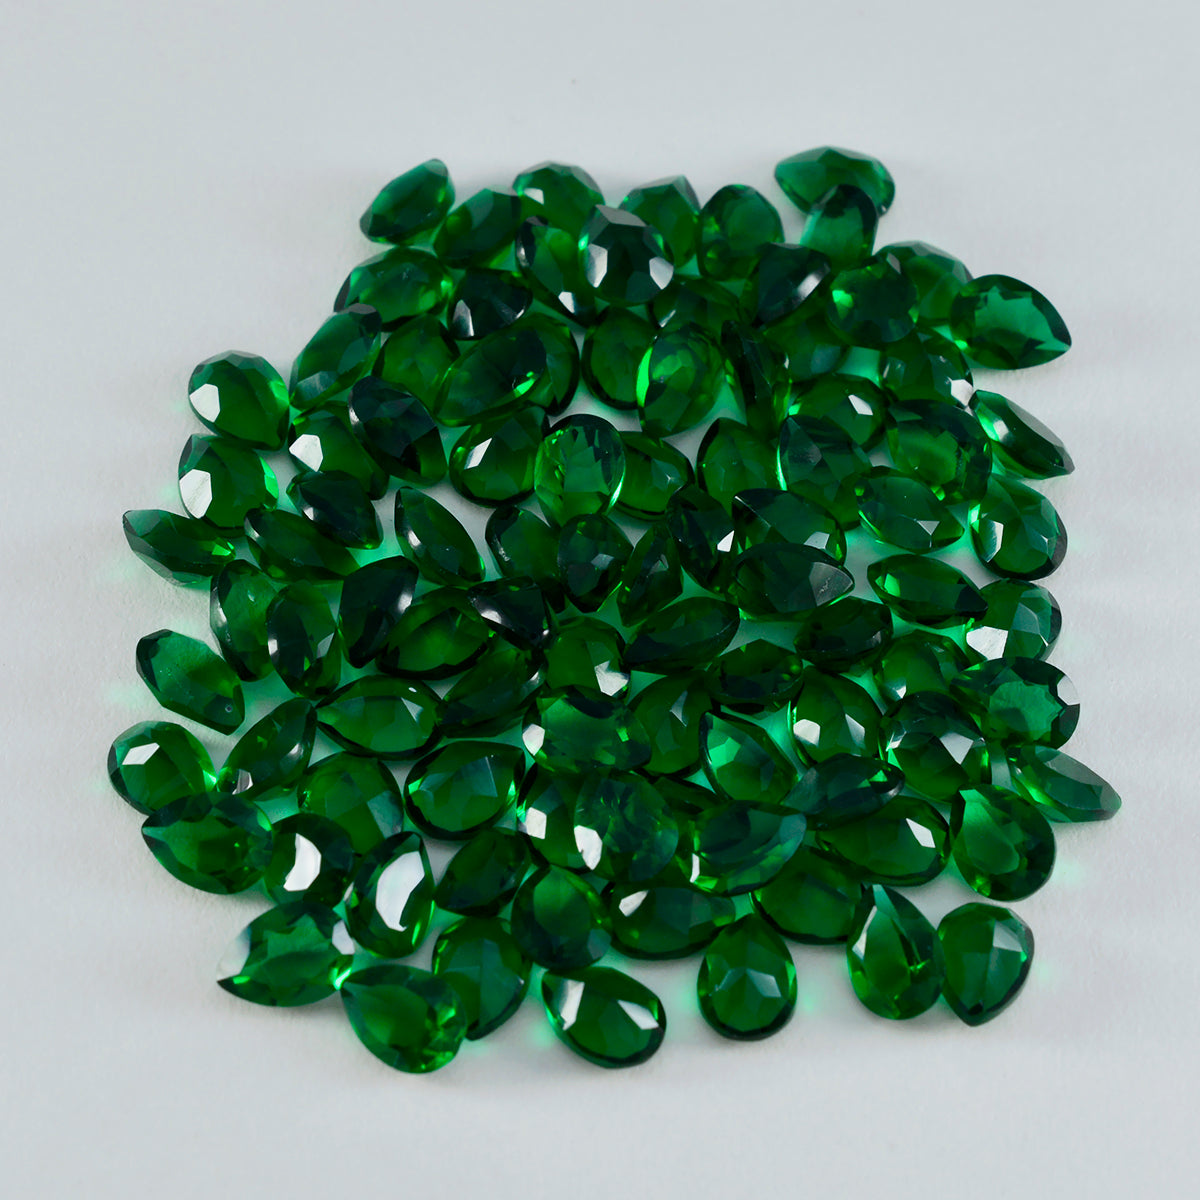 Riyogems 1pc vert émeraude cz facettes 4x6mm forme de poire belle qualité pierre précieuse en vrac